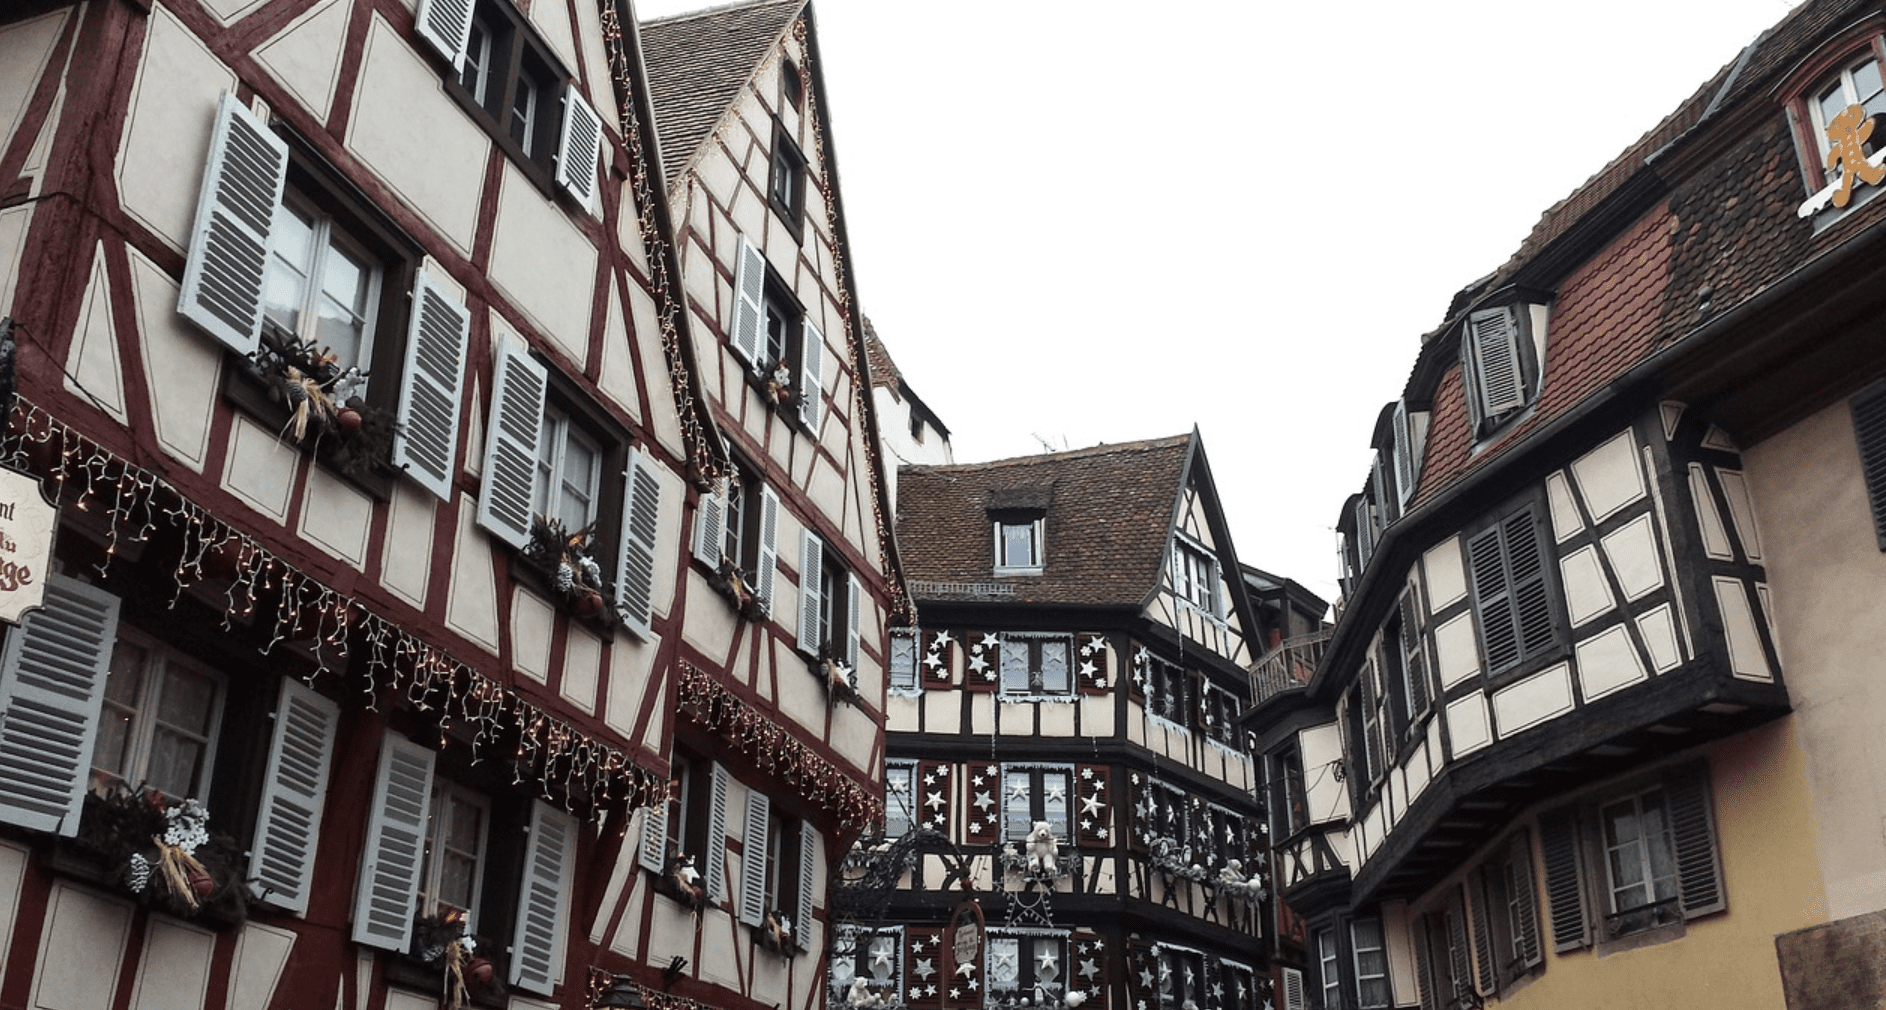 Découvre Strasbourg grâce à son marché de Noël